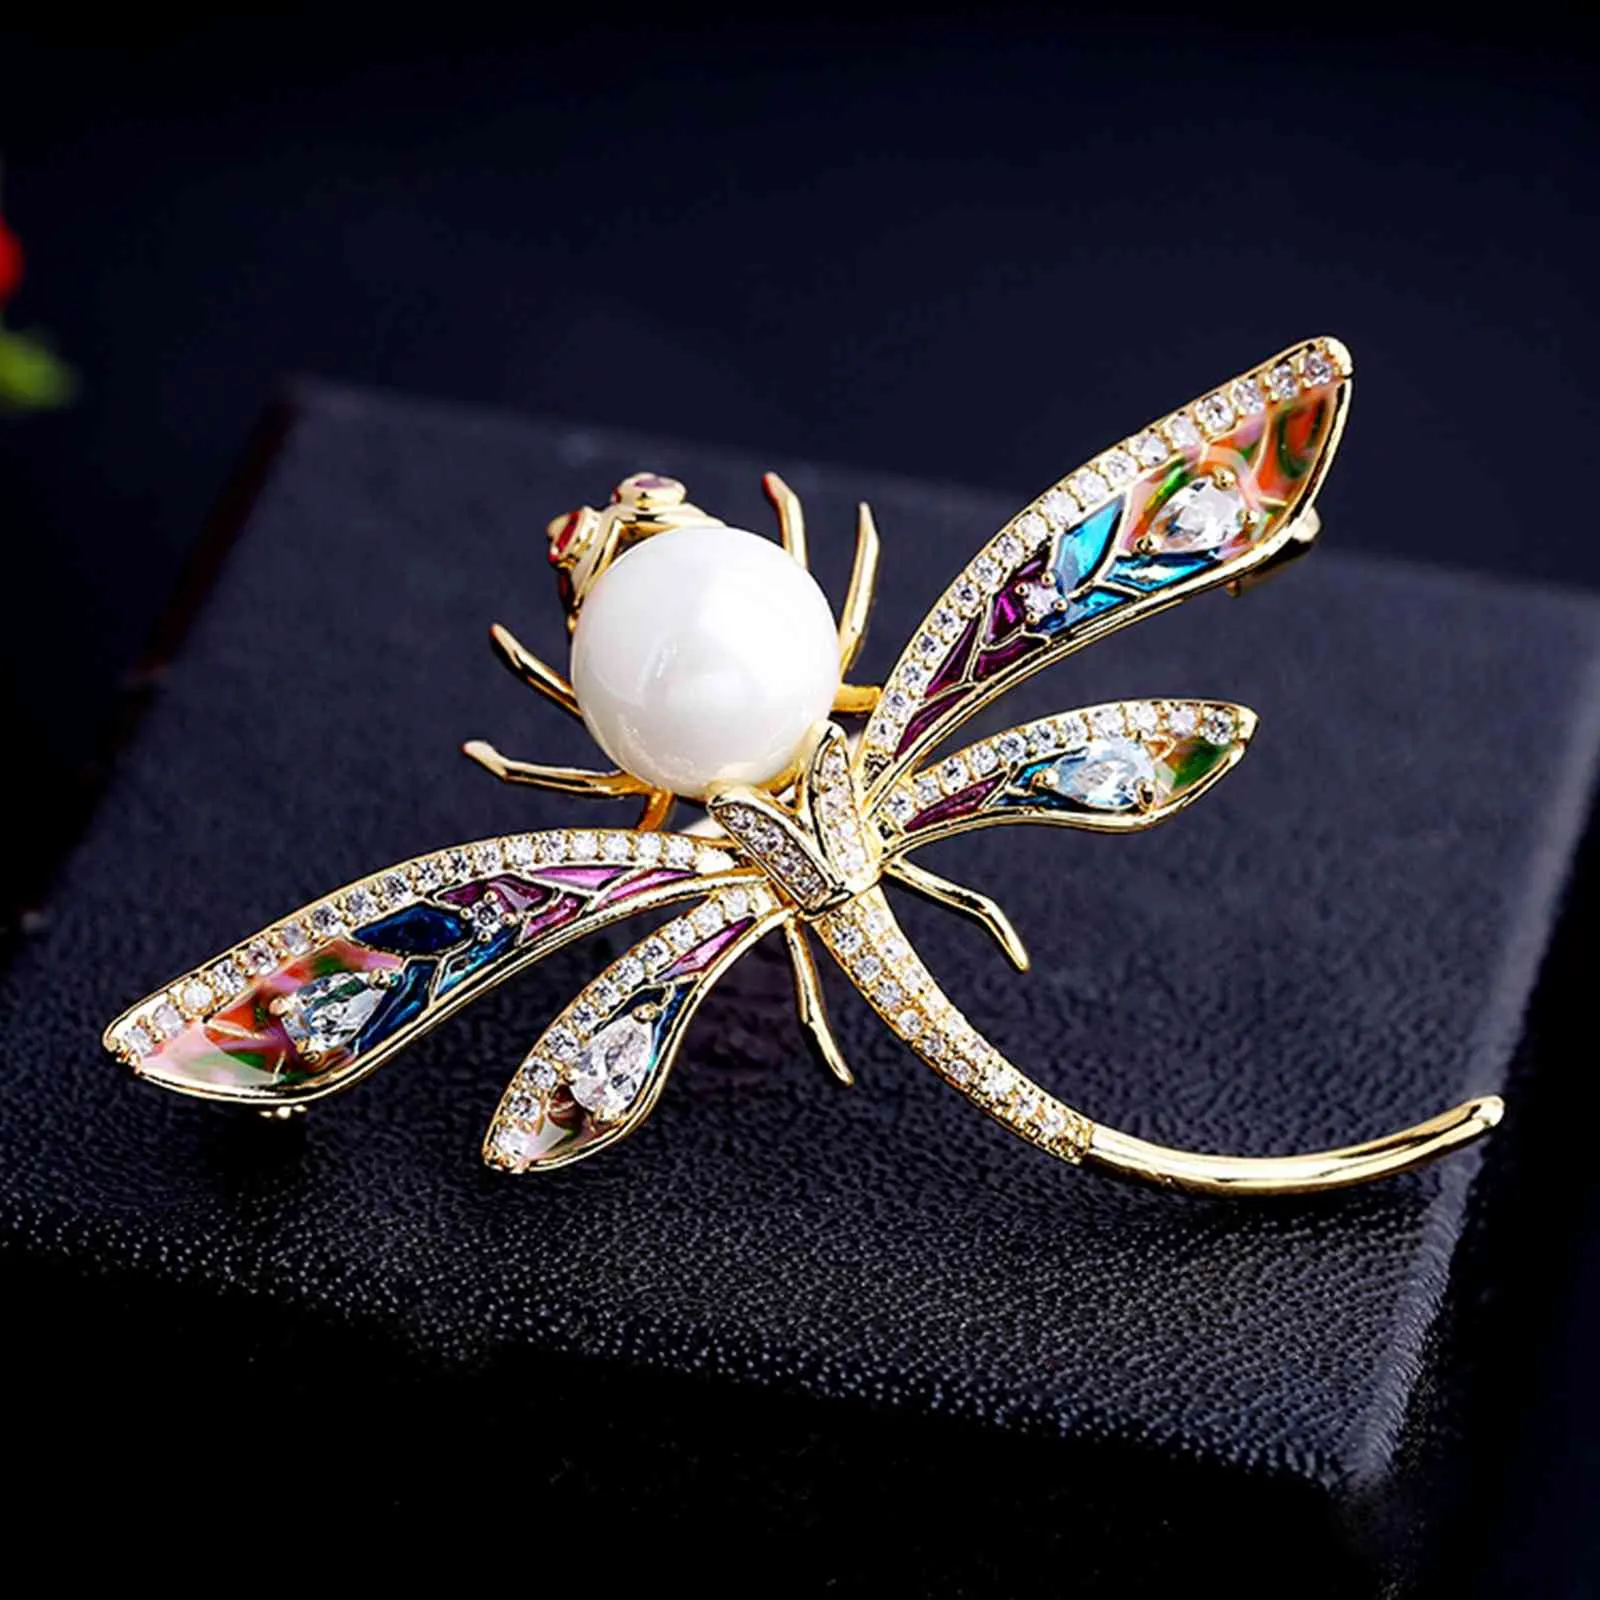 Wspaniałe Pave Clear CZ Zestaw Naśladowany Pearl Head Kolorowe Emalia Dragonfly Podzeńców Płeć Owad Biżuteria Dla Loved Ones